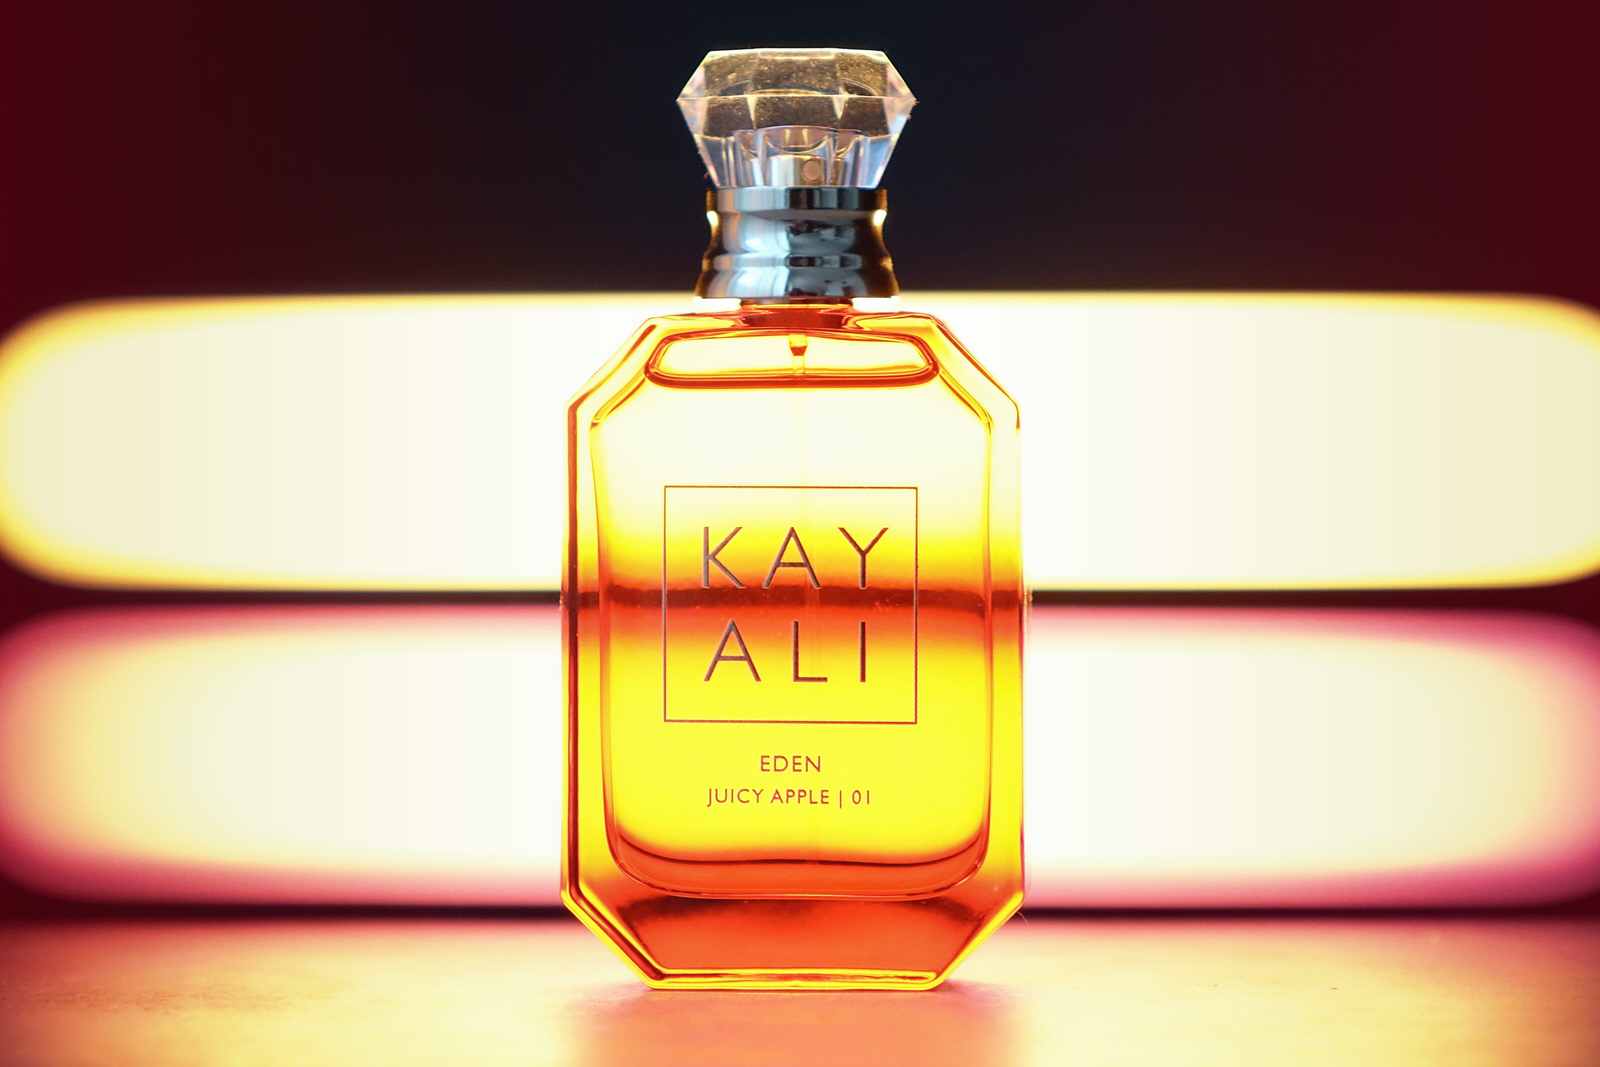 Le nouveau parfum Eden de Kayali à la pomme